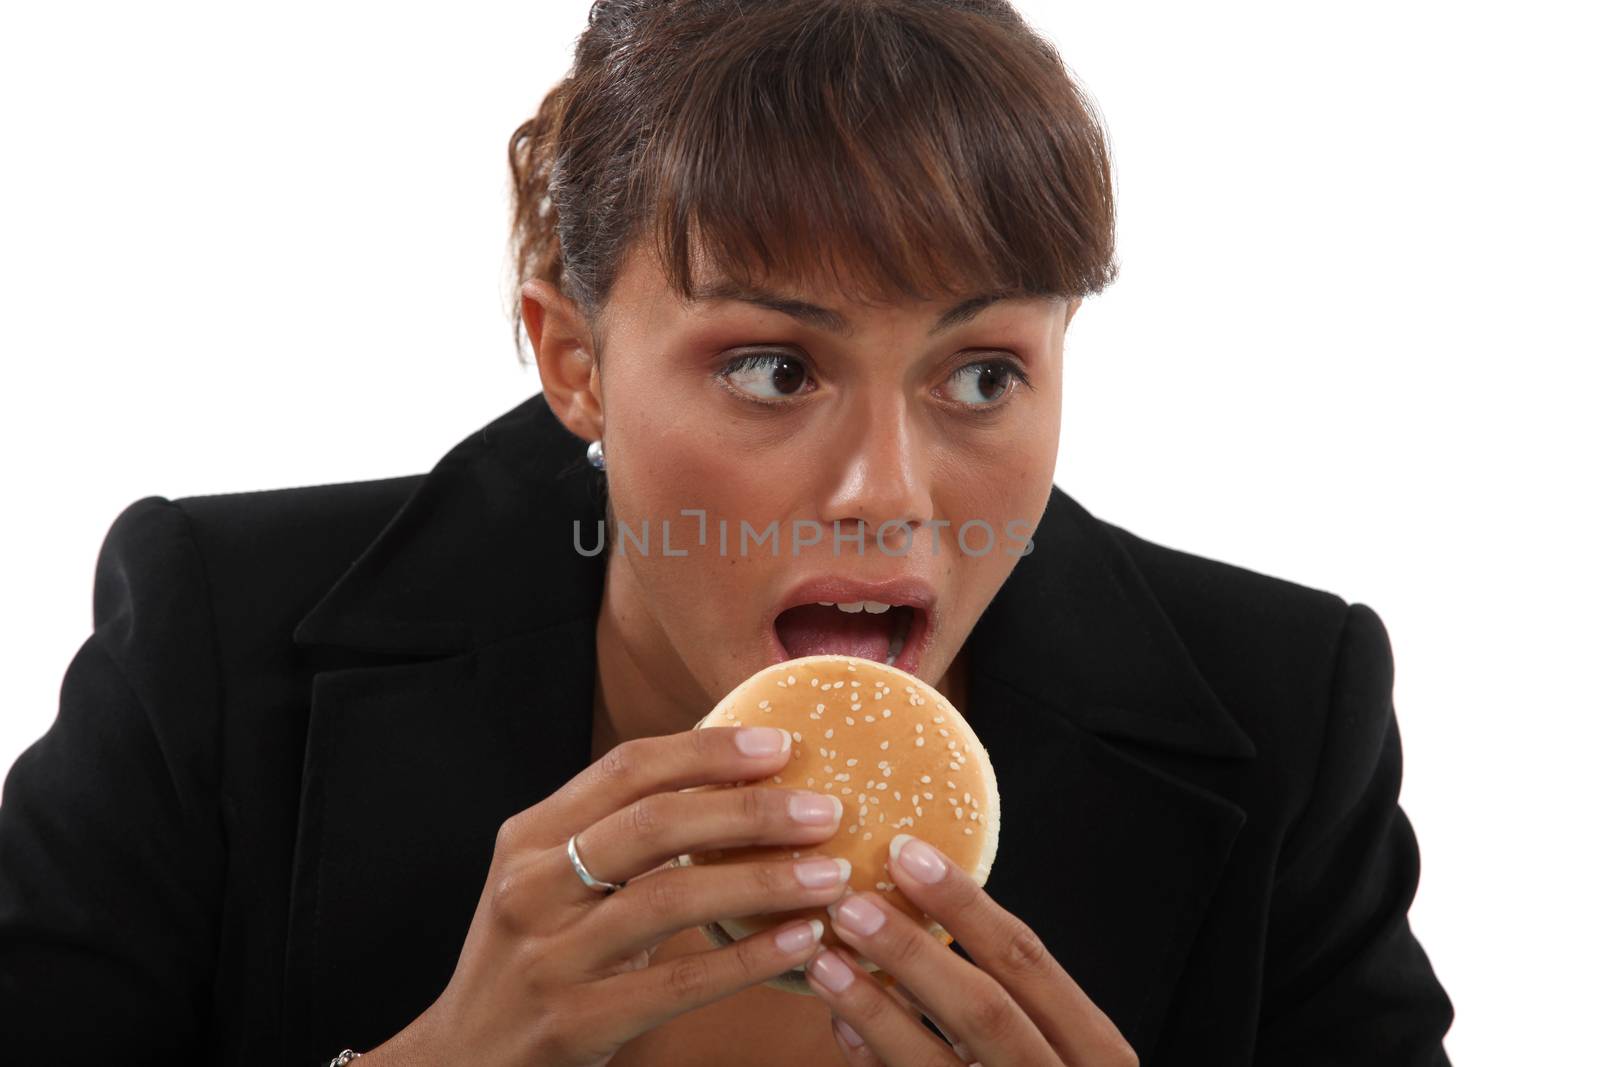 Businesswoman biting a burger